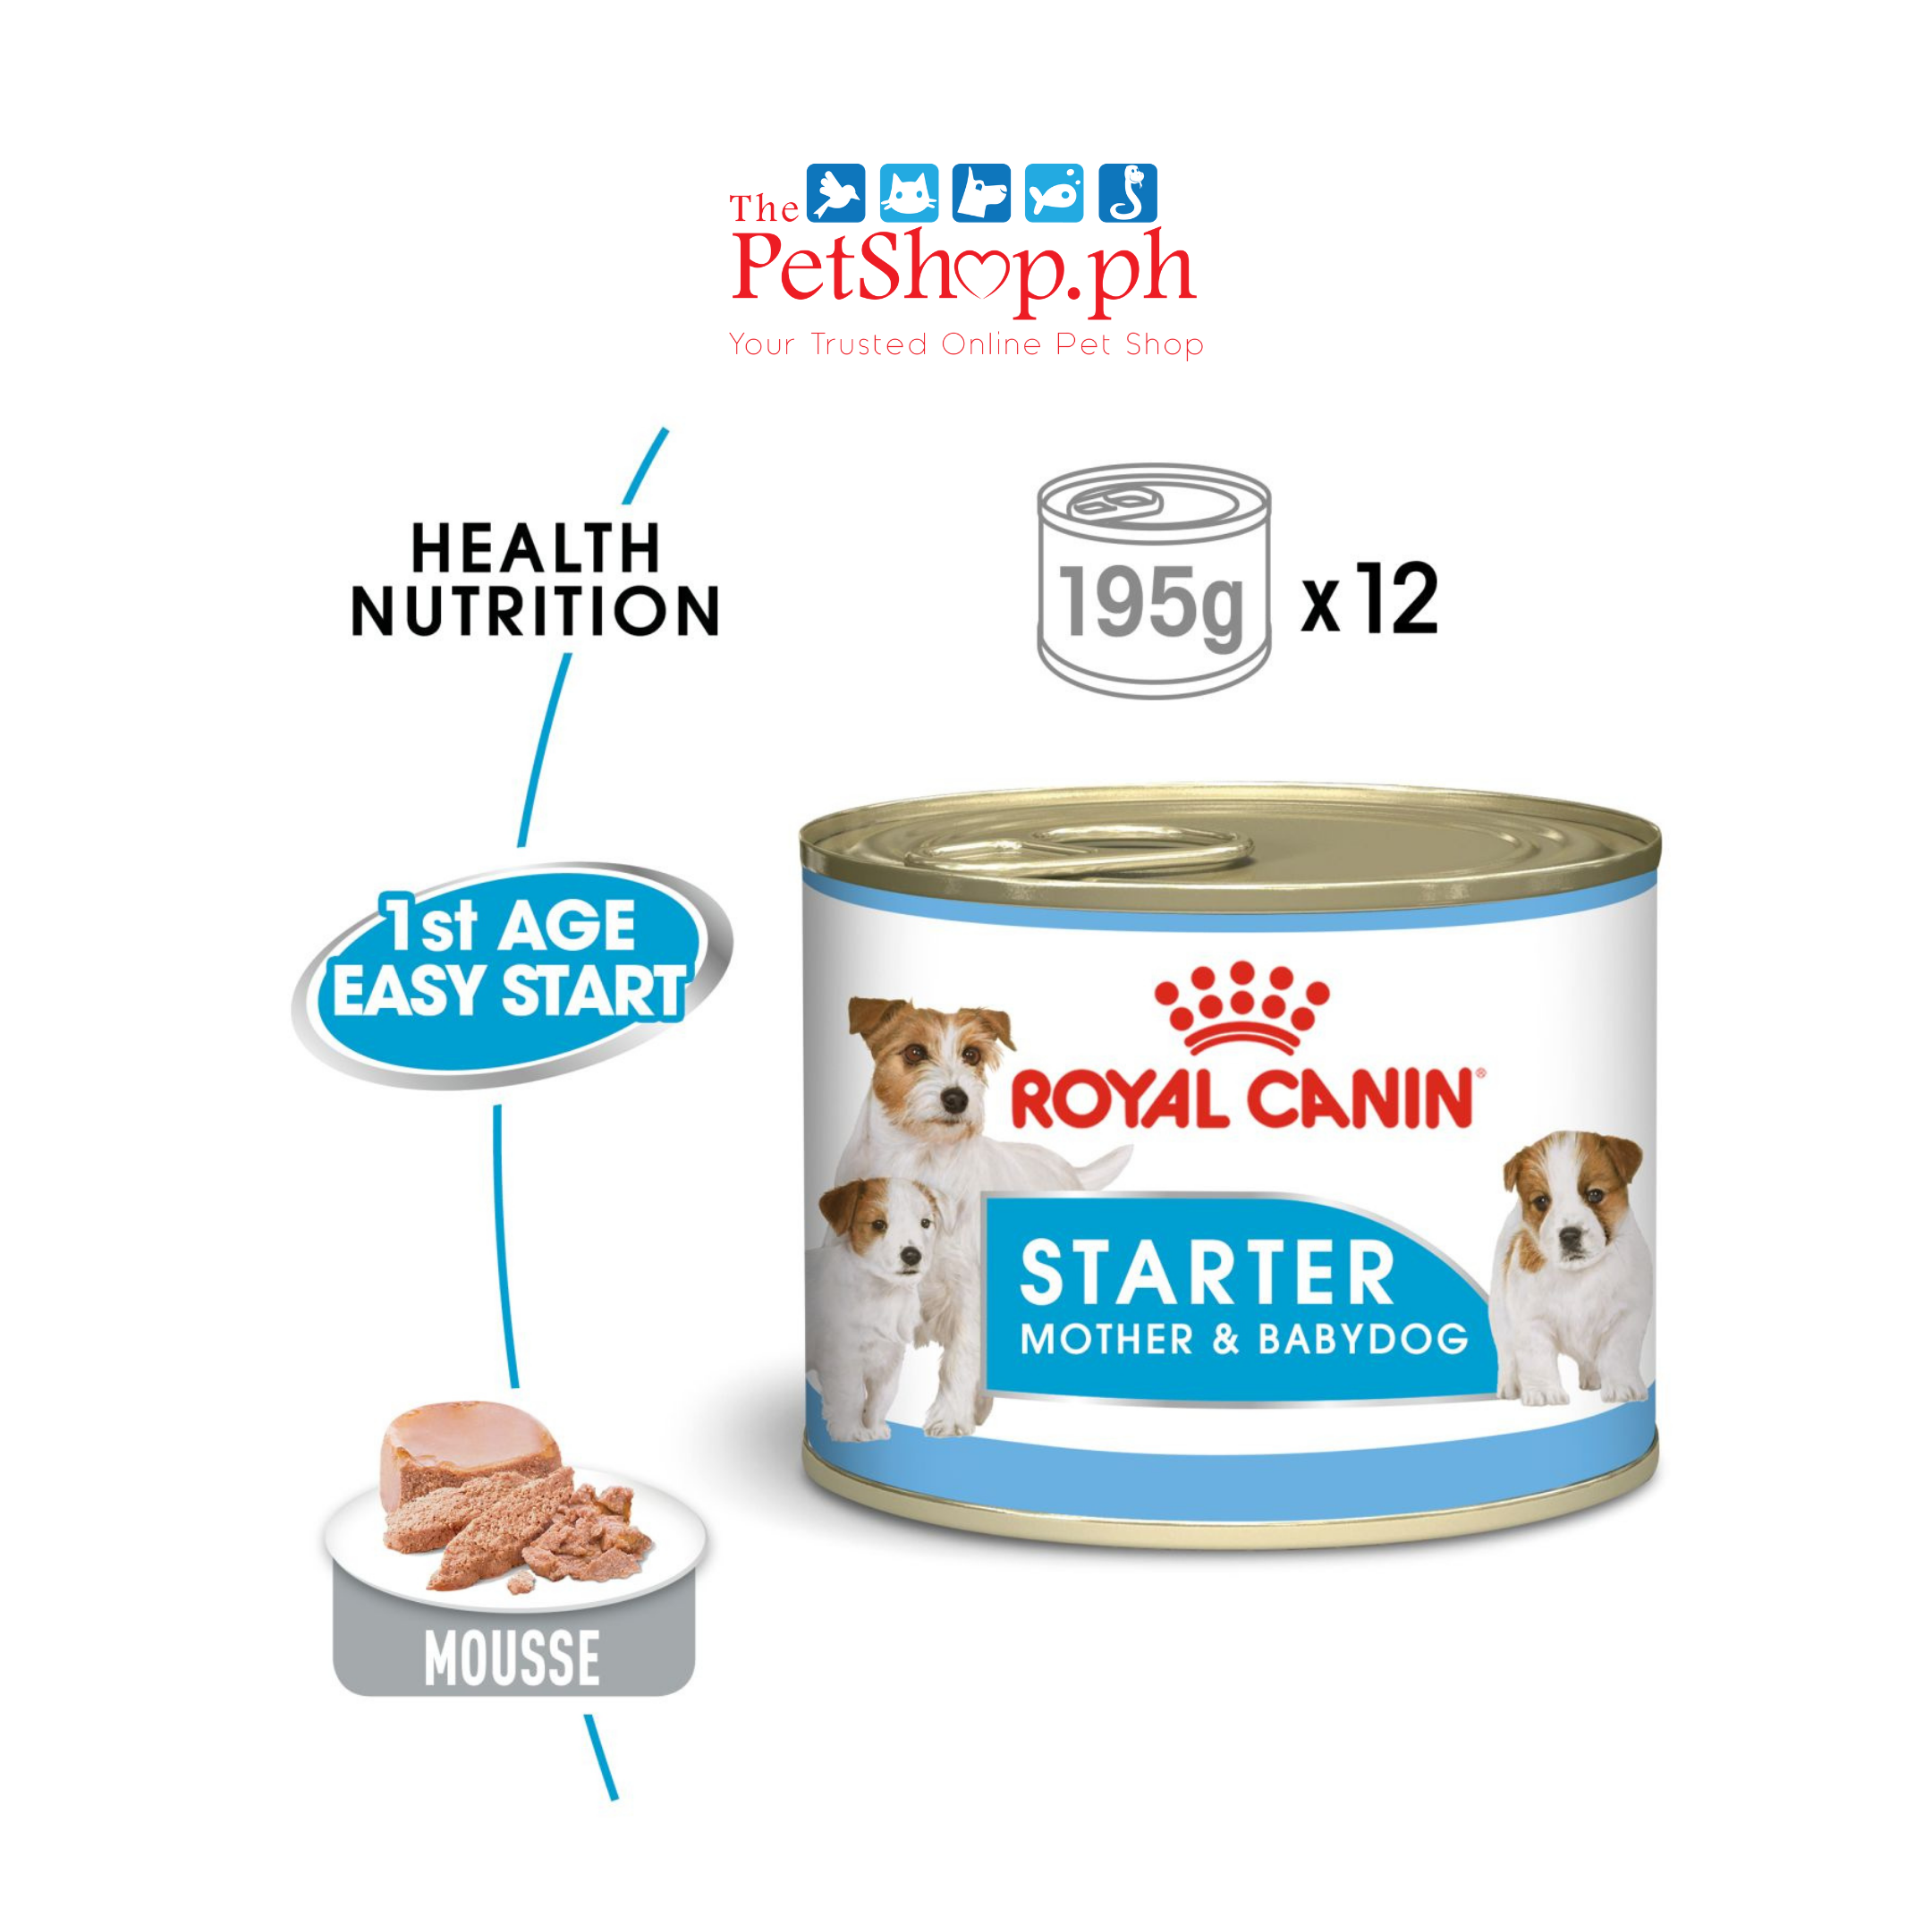 Royal Canin Mother & Babydog 195g Starter Mousse Wet Dog Food - Canine Health Nutrition